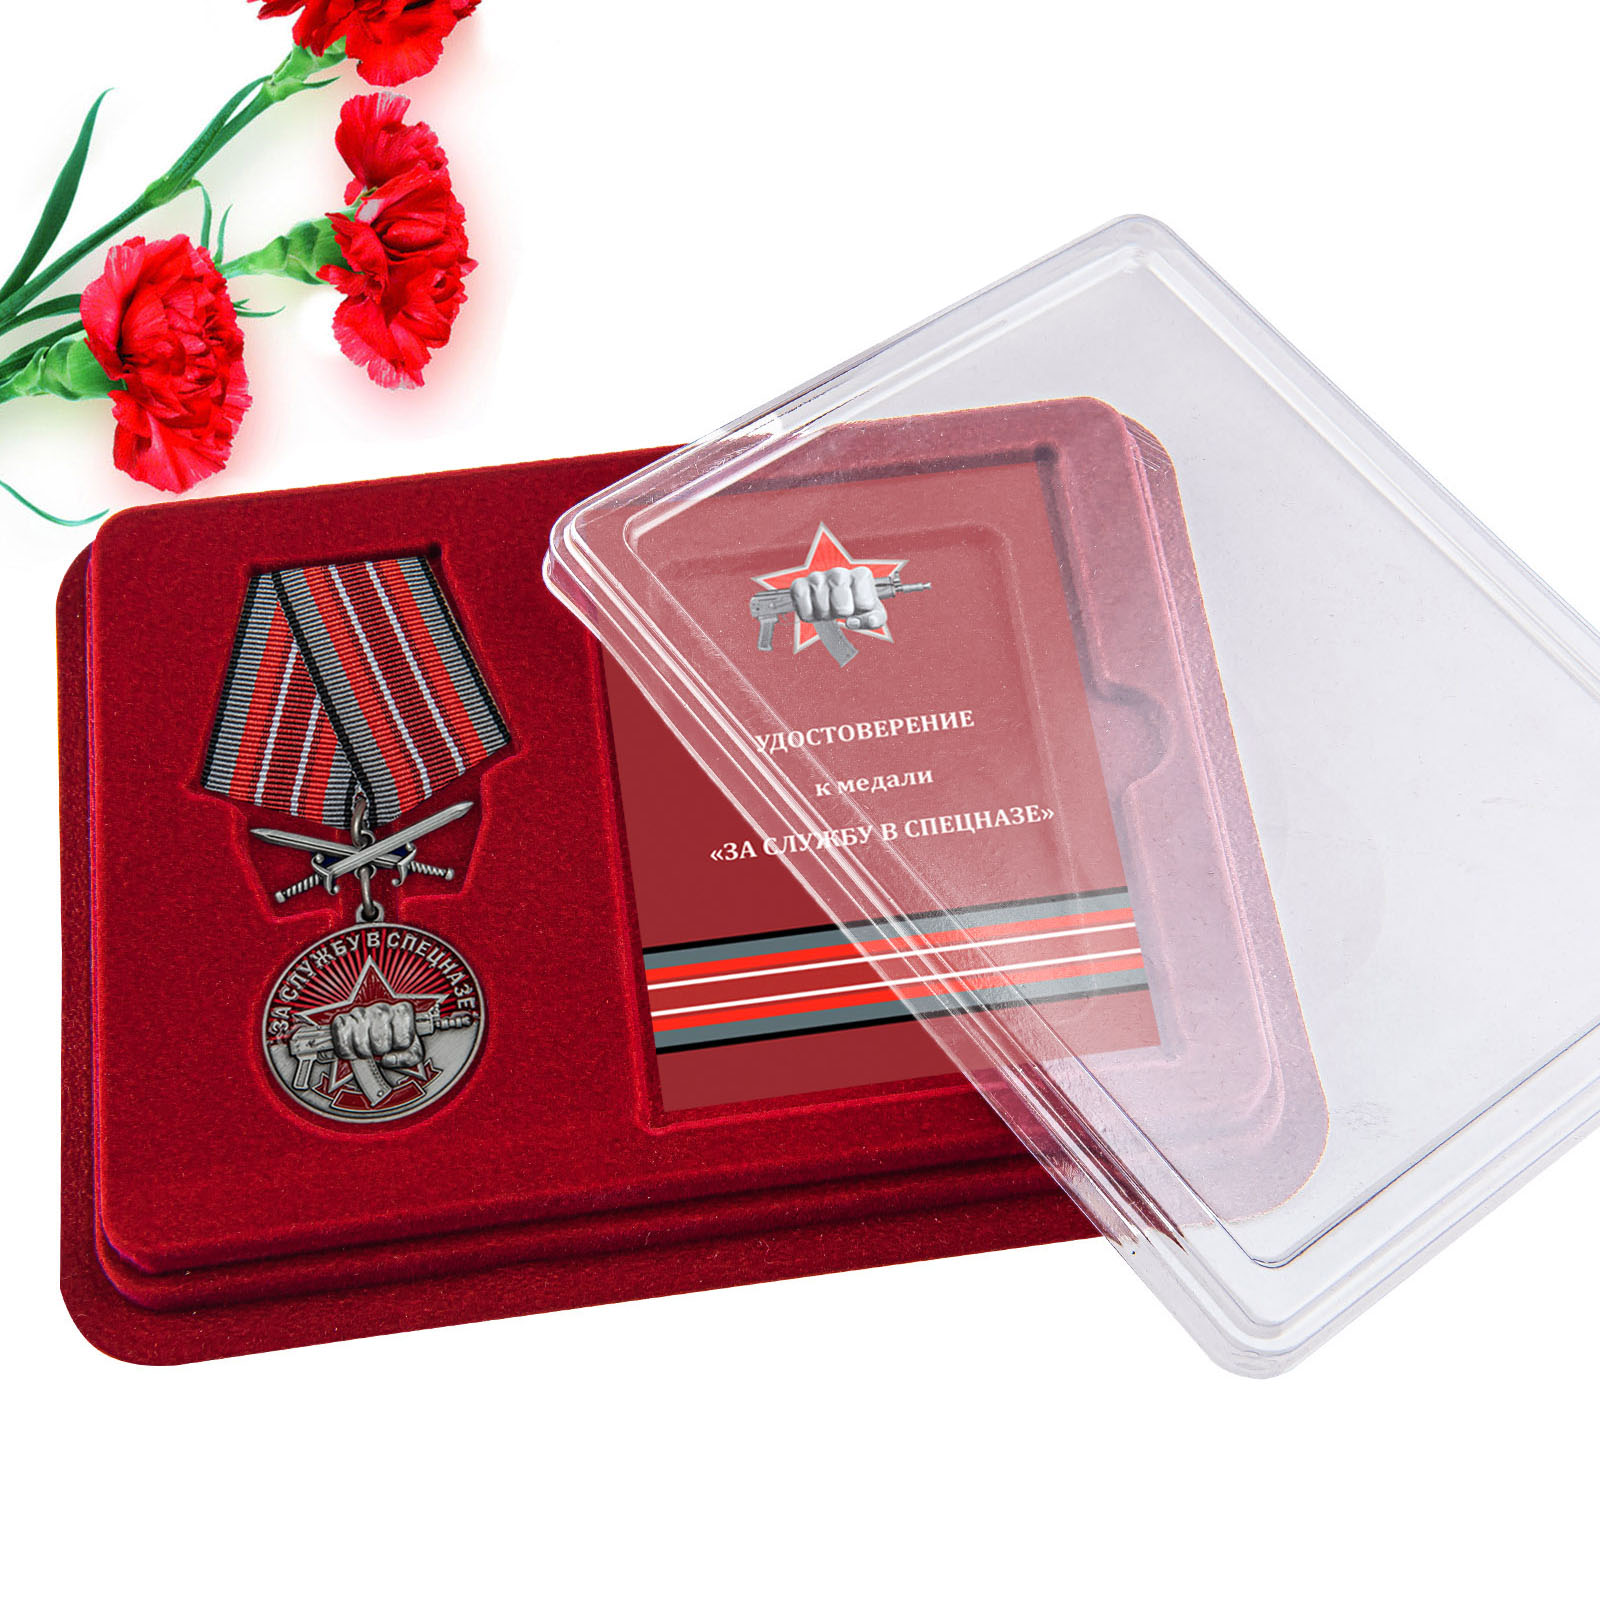 Купить медаль За службу в Спецназе с мечами онлайн в подарок